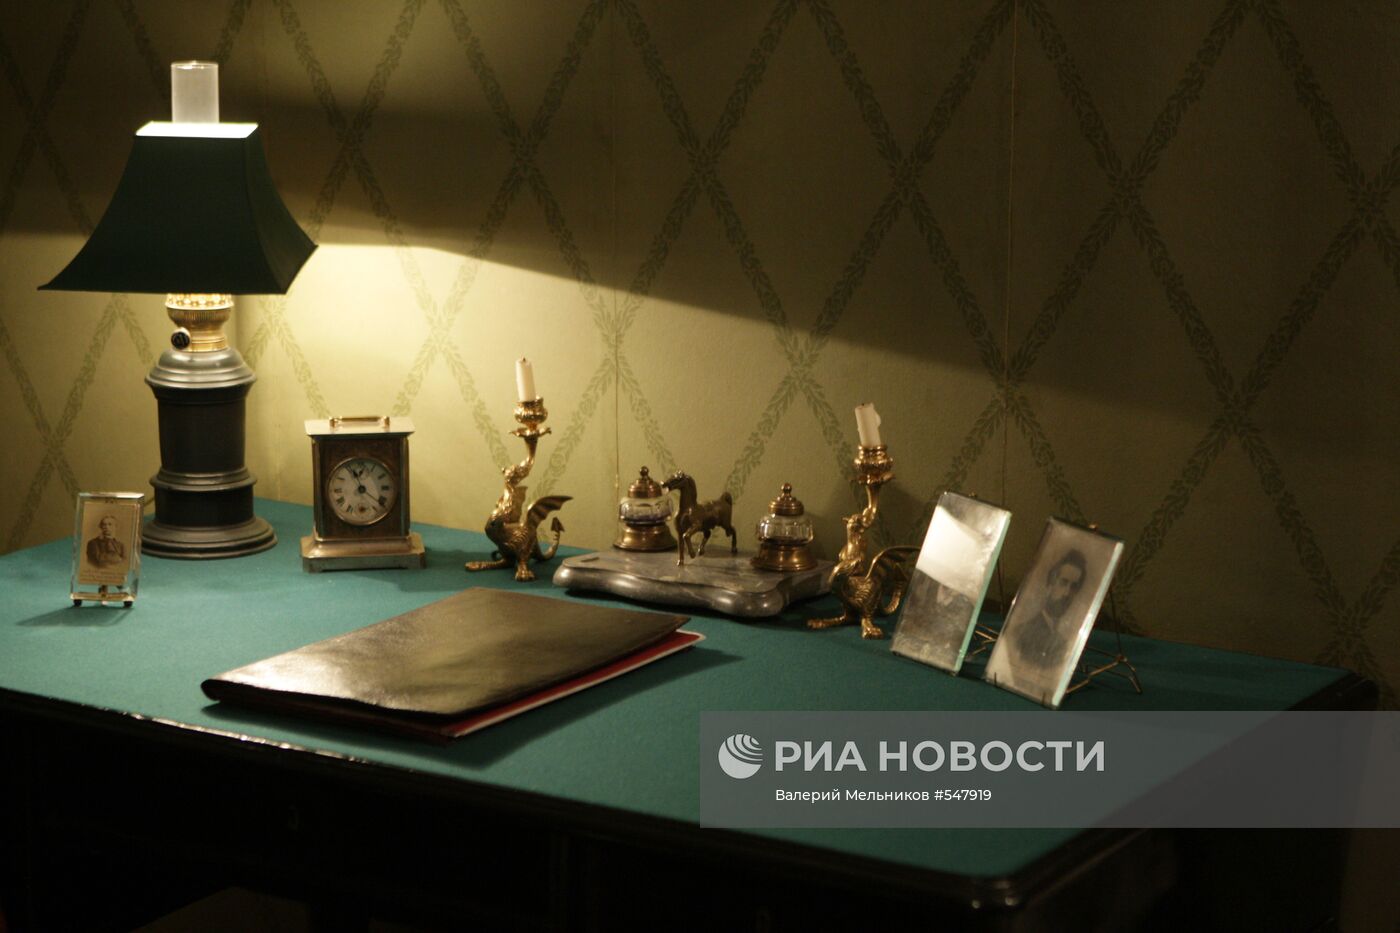 Дом-музей А.П.Чехова в Москве